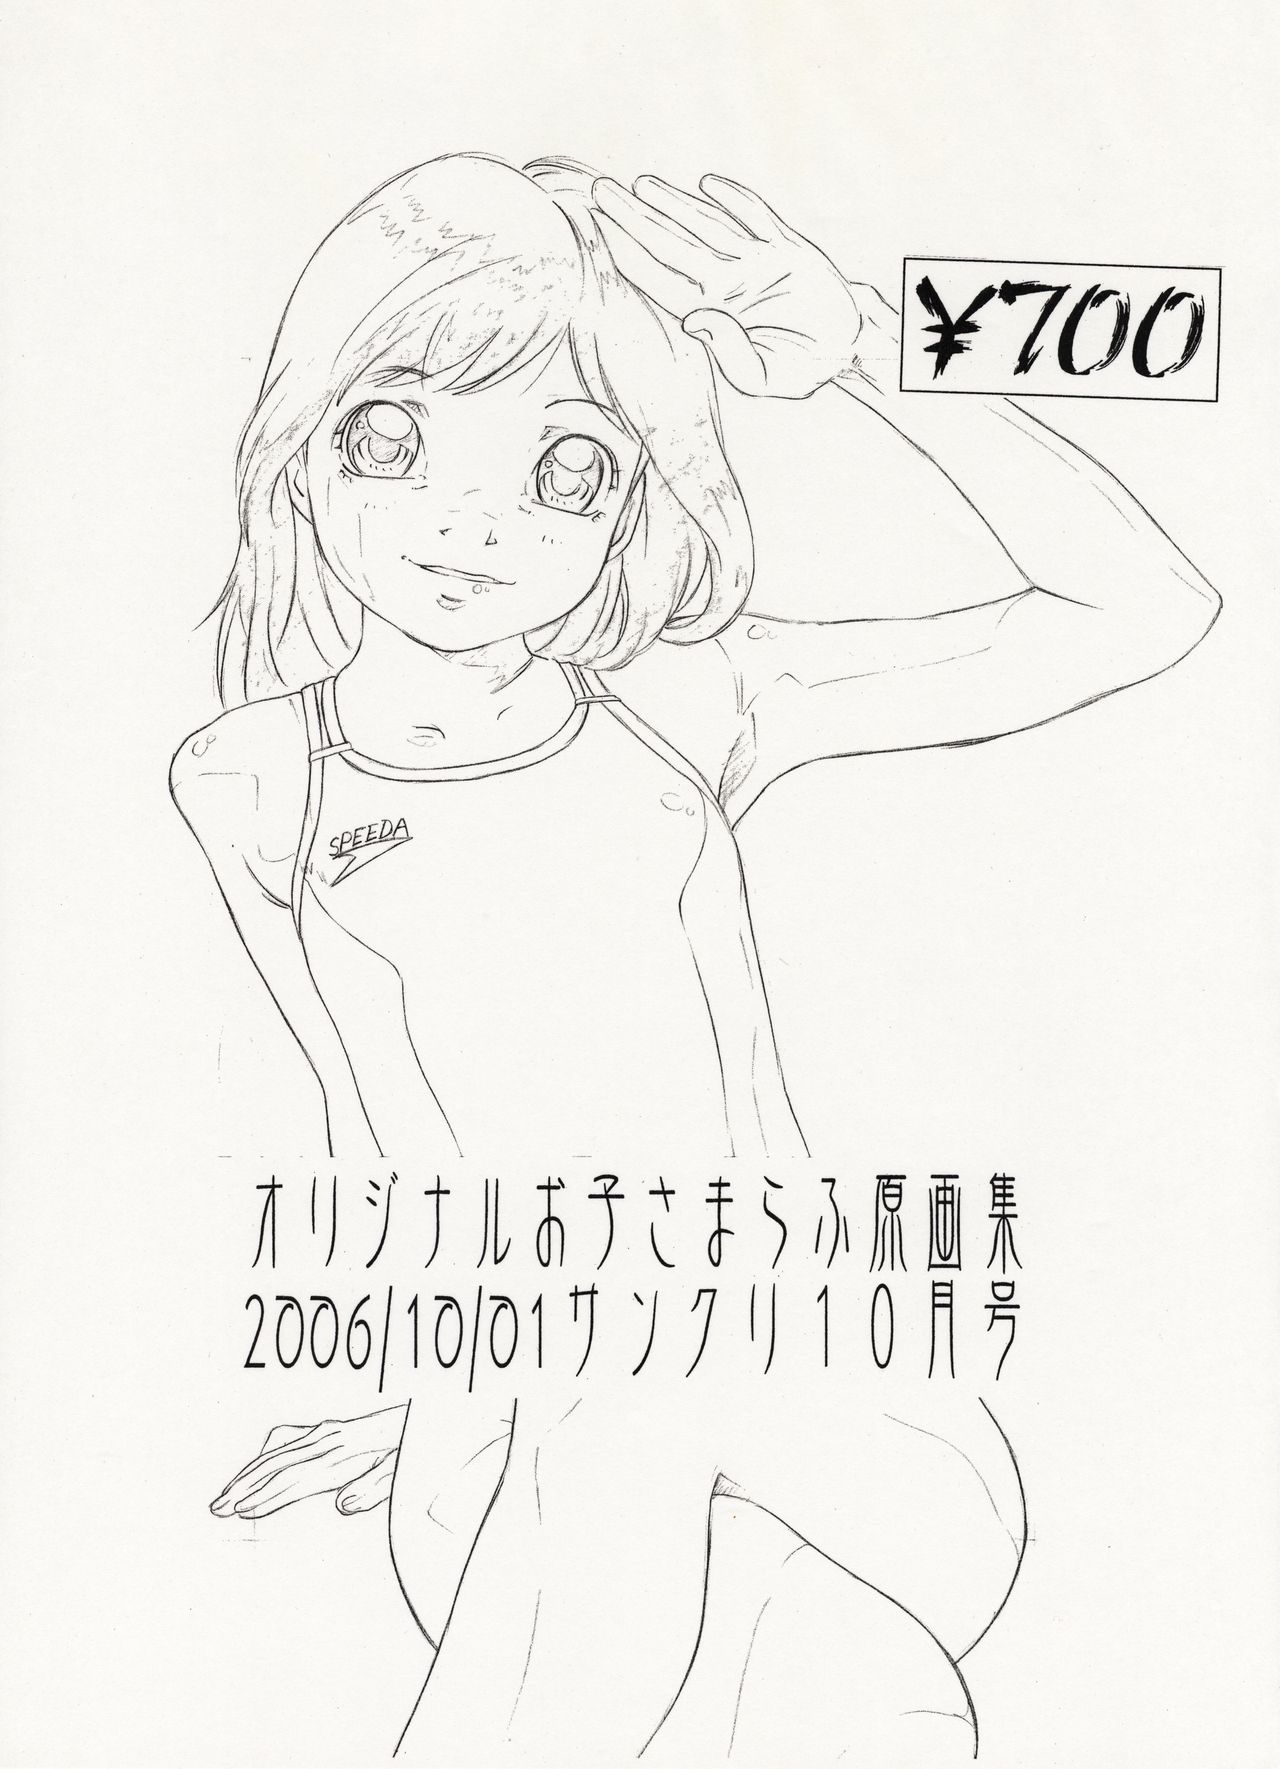 オリジナルオコ様ラフゲンガシュウ2006/10 / 01SunCre 10-gatsugou